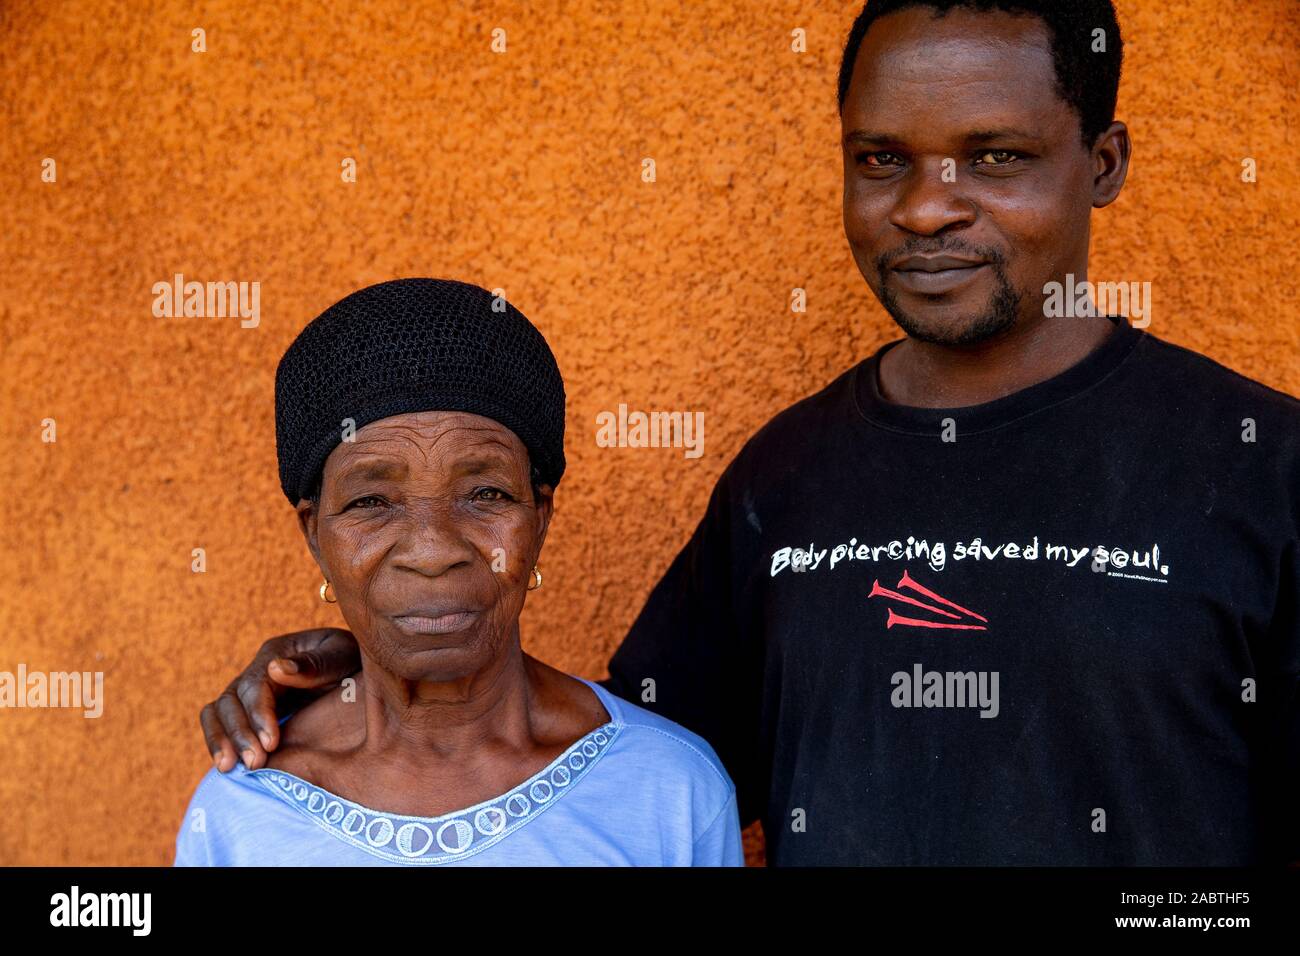 Oasis de l'amour, un centre catholique pour handicapés mentaux dans la région de Kpalimé, au Togo. Homme handicapé avec sa mère. Banque D'Images